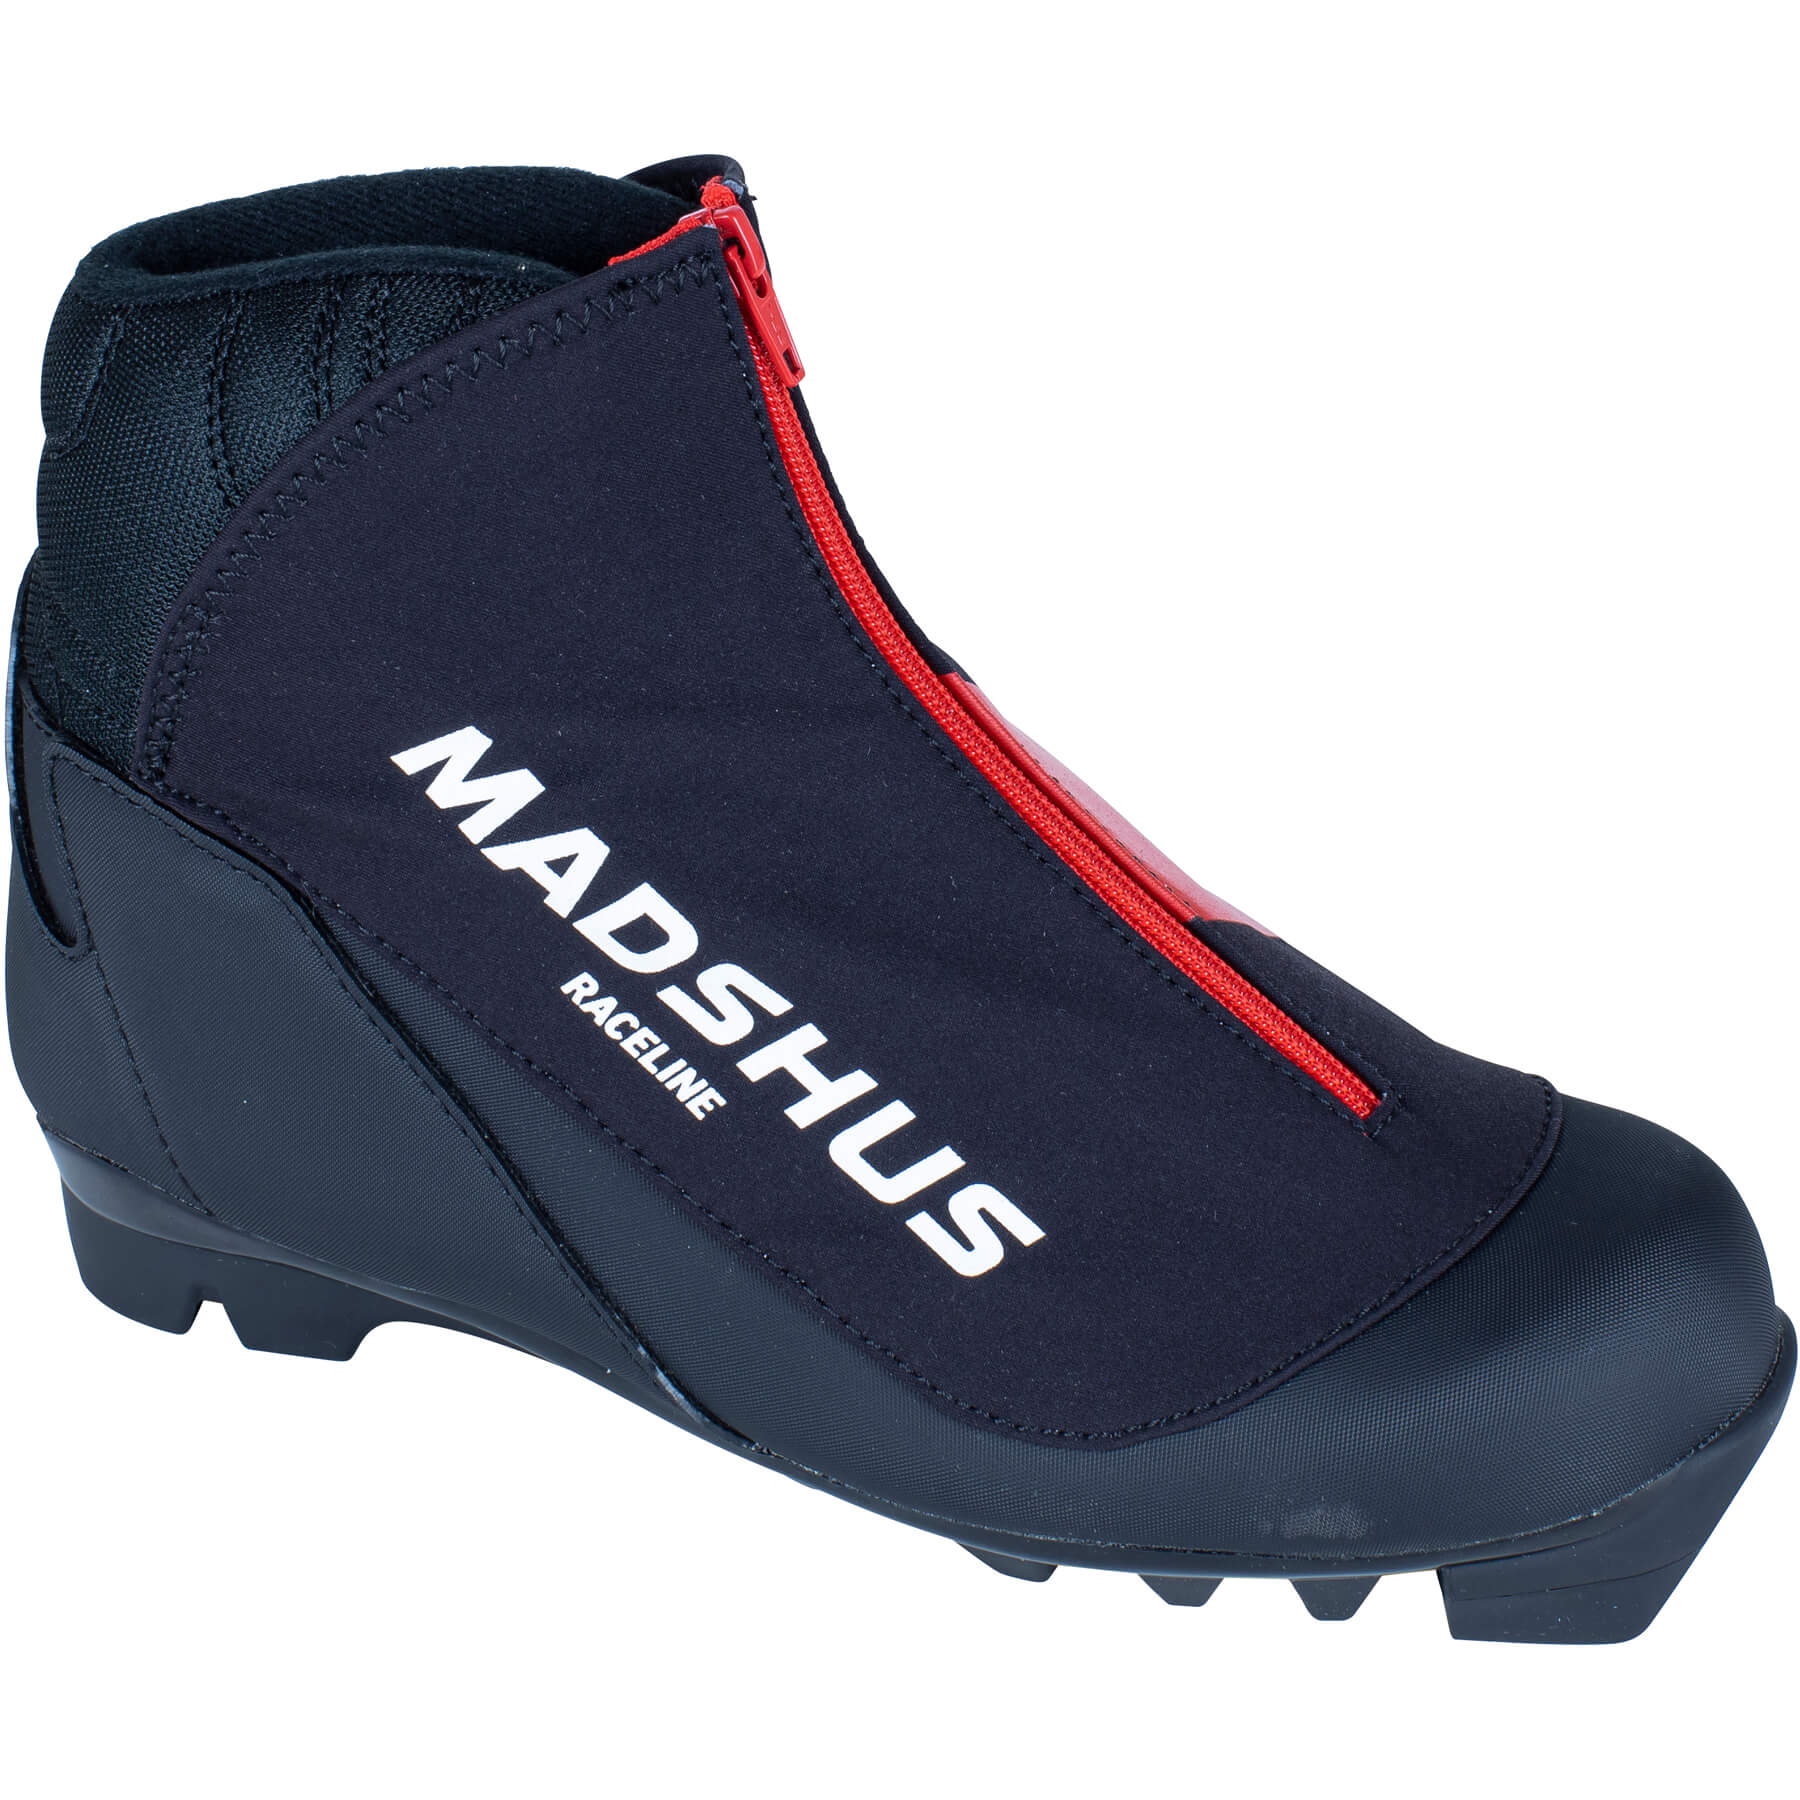 Madshus Raceline Jr Boot